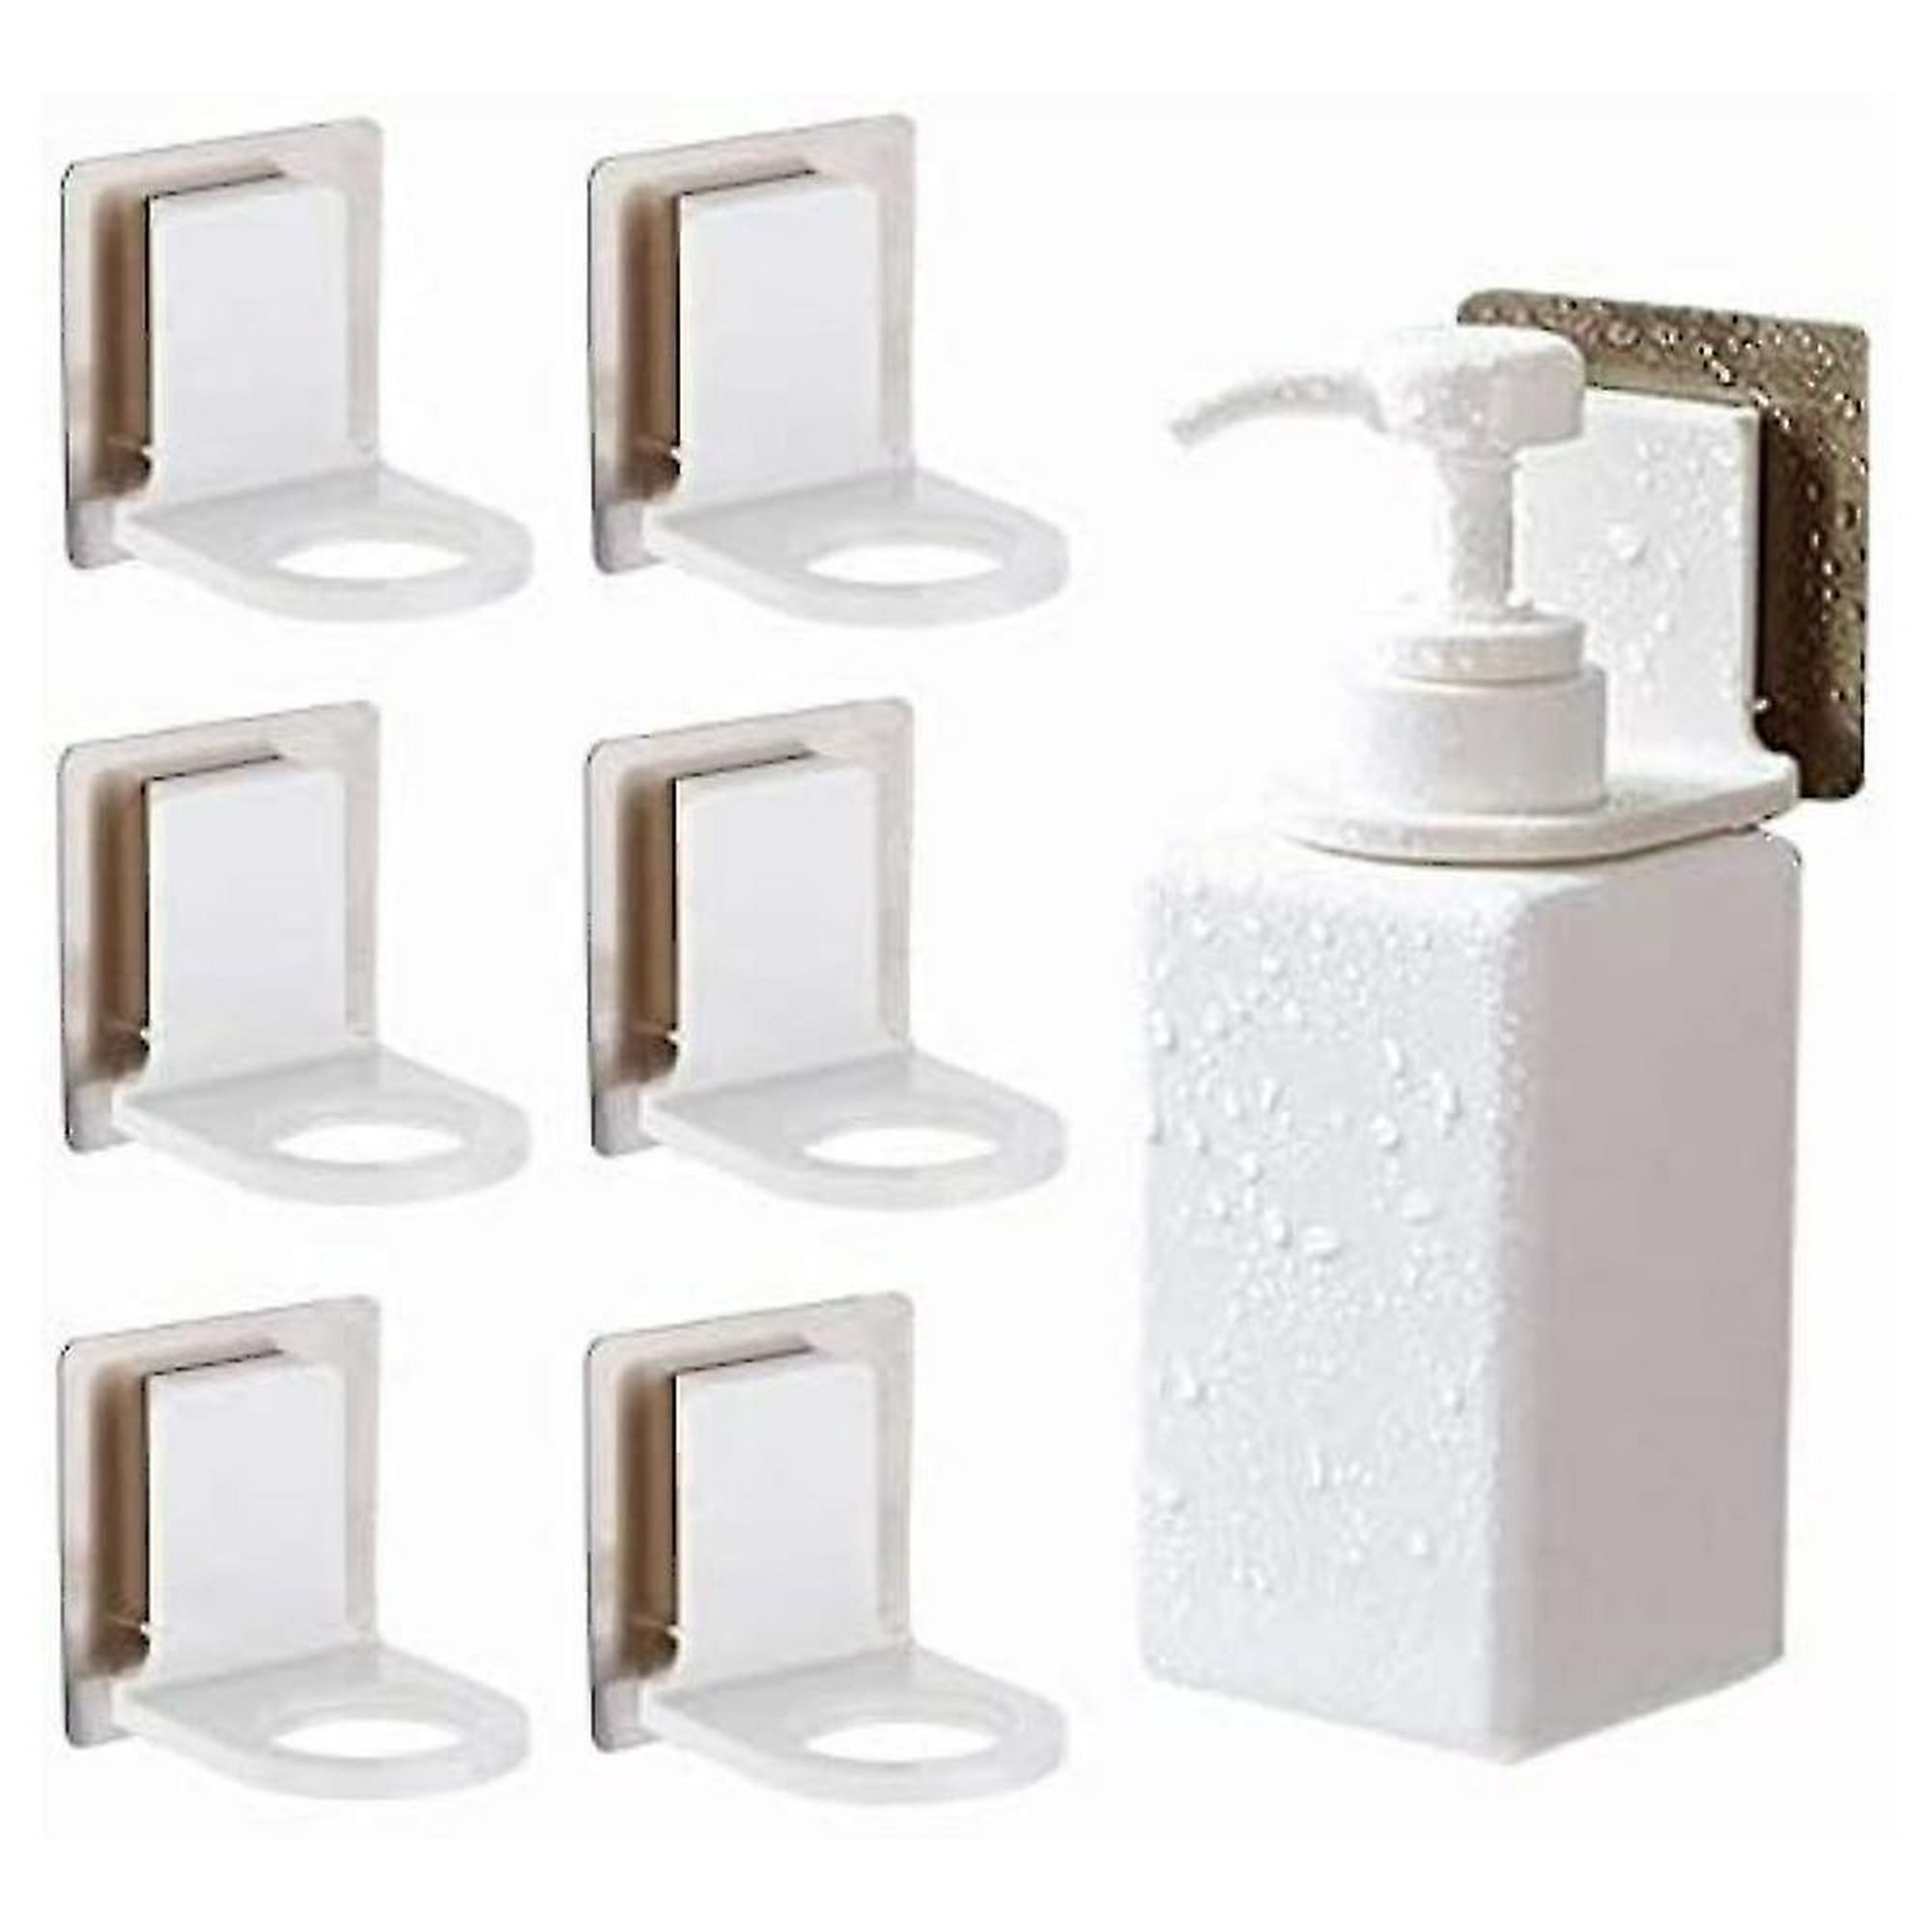 Soportes para botellas de Gel de ducha, ganchos dispensadores de jabón,  soporte de jabón líquido para baño montado en la pared, succión de champú,  6 uds. YONGSHENG 9024715301505